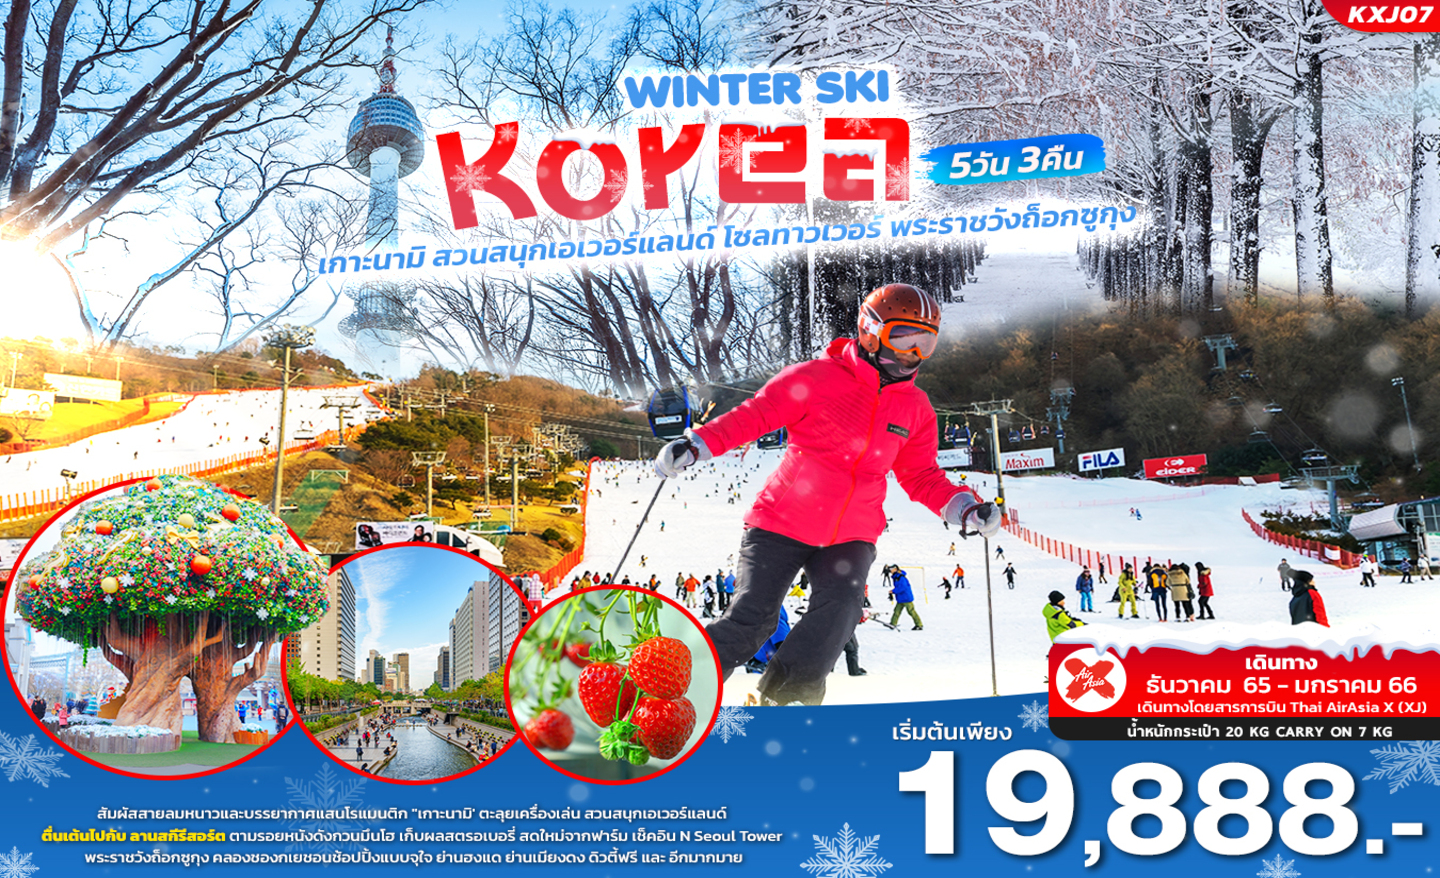 ทัวร์เกาหลี Winter Ski Korea (ธ.ค65 – ม.ค.66)